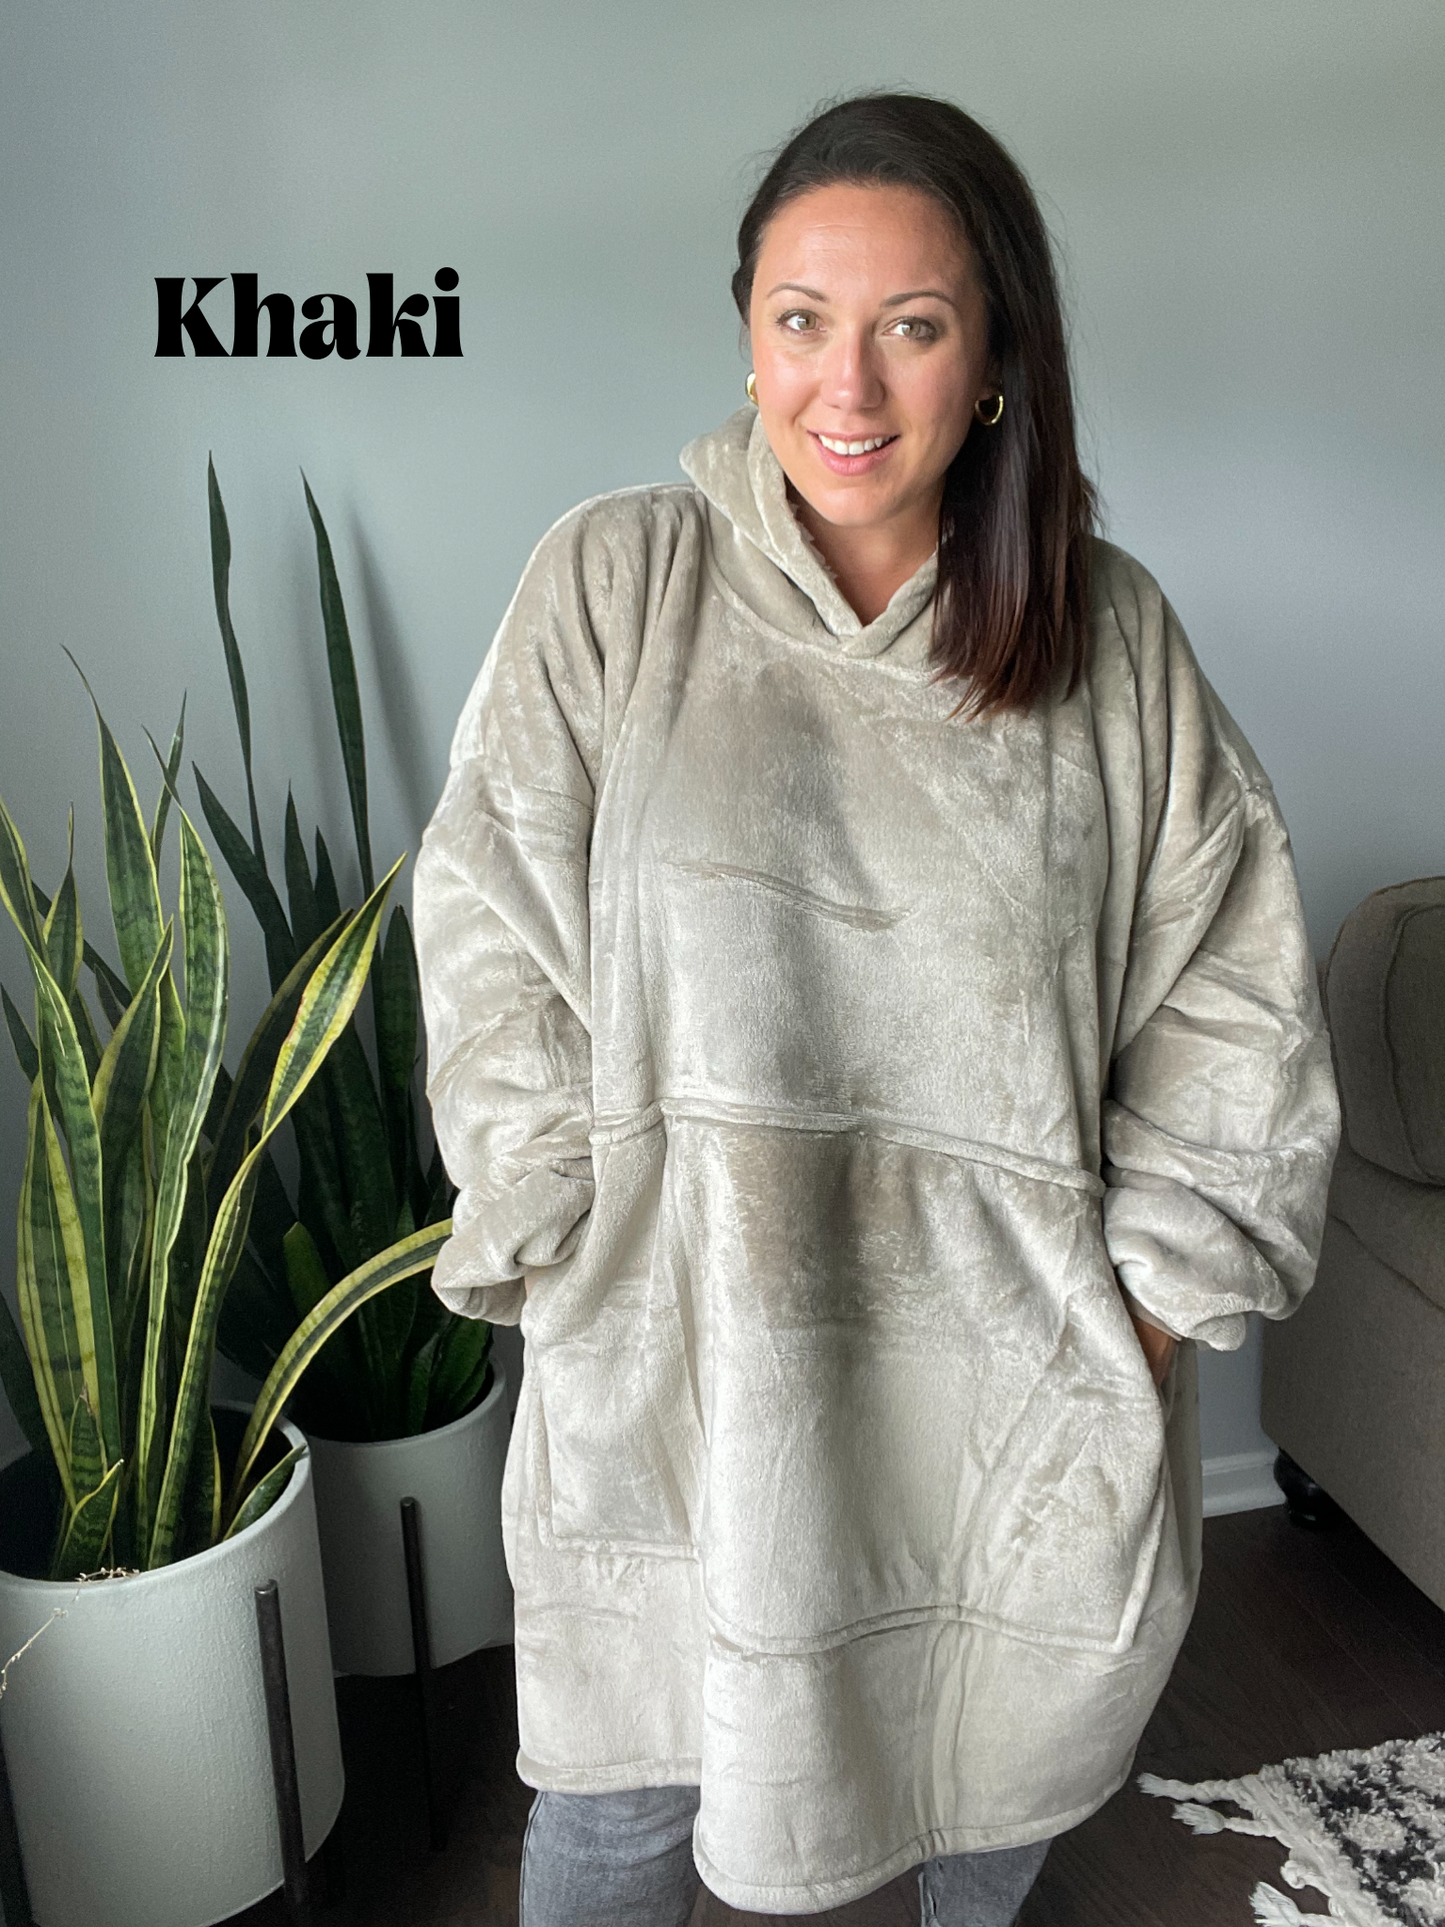 Adult Size Custom Blanket Hoodies (multiple options)